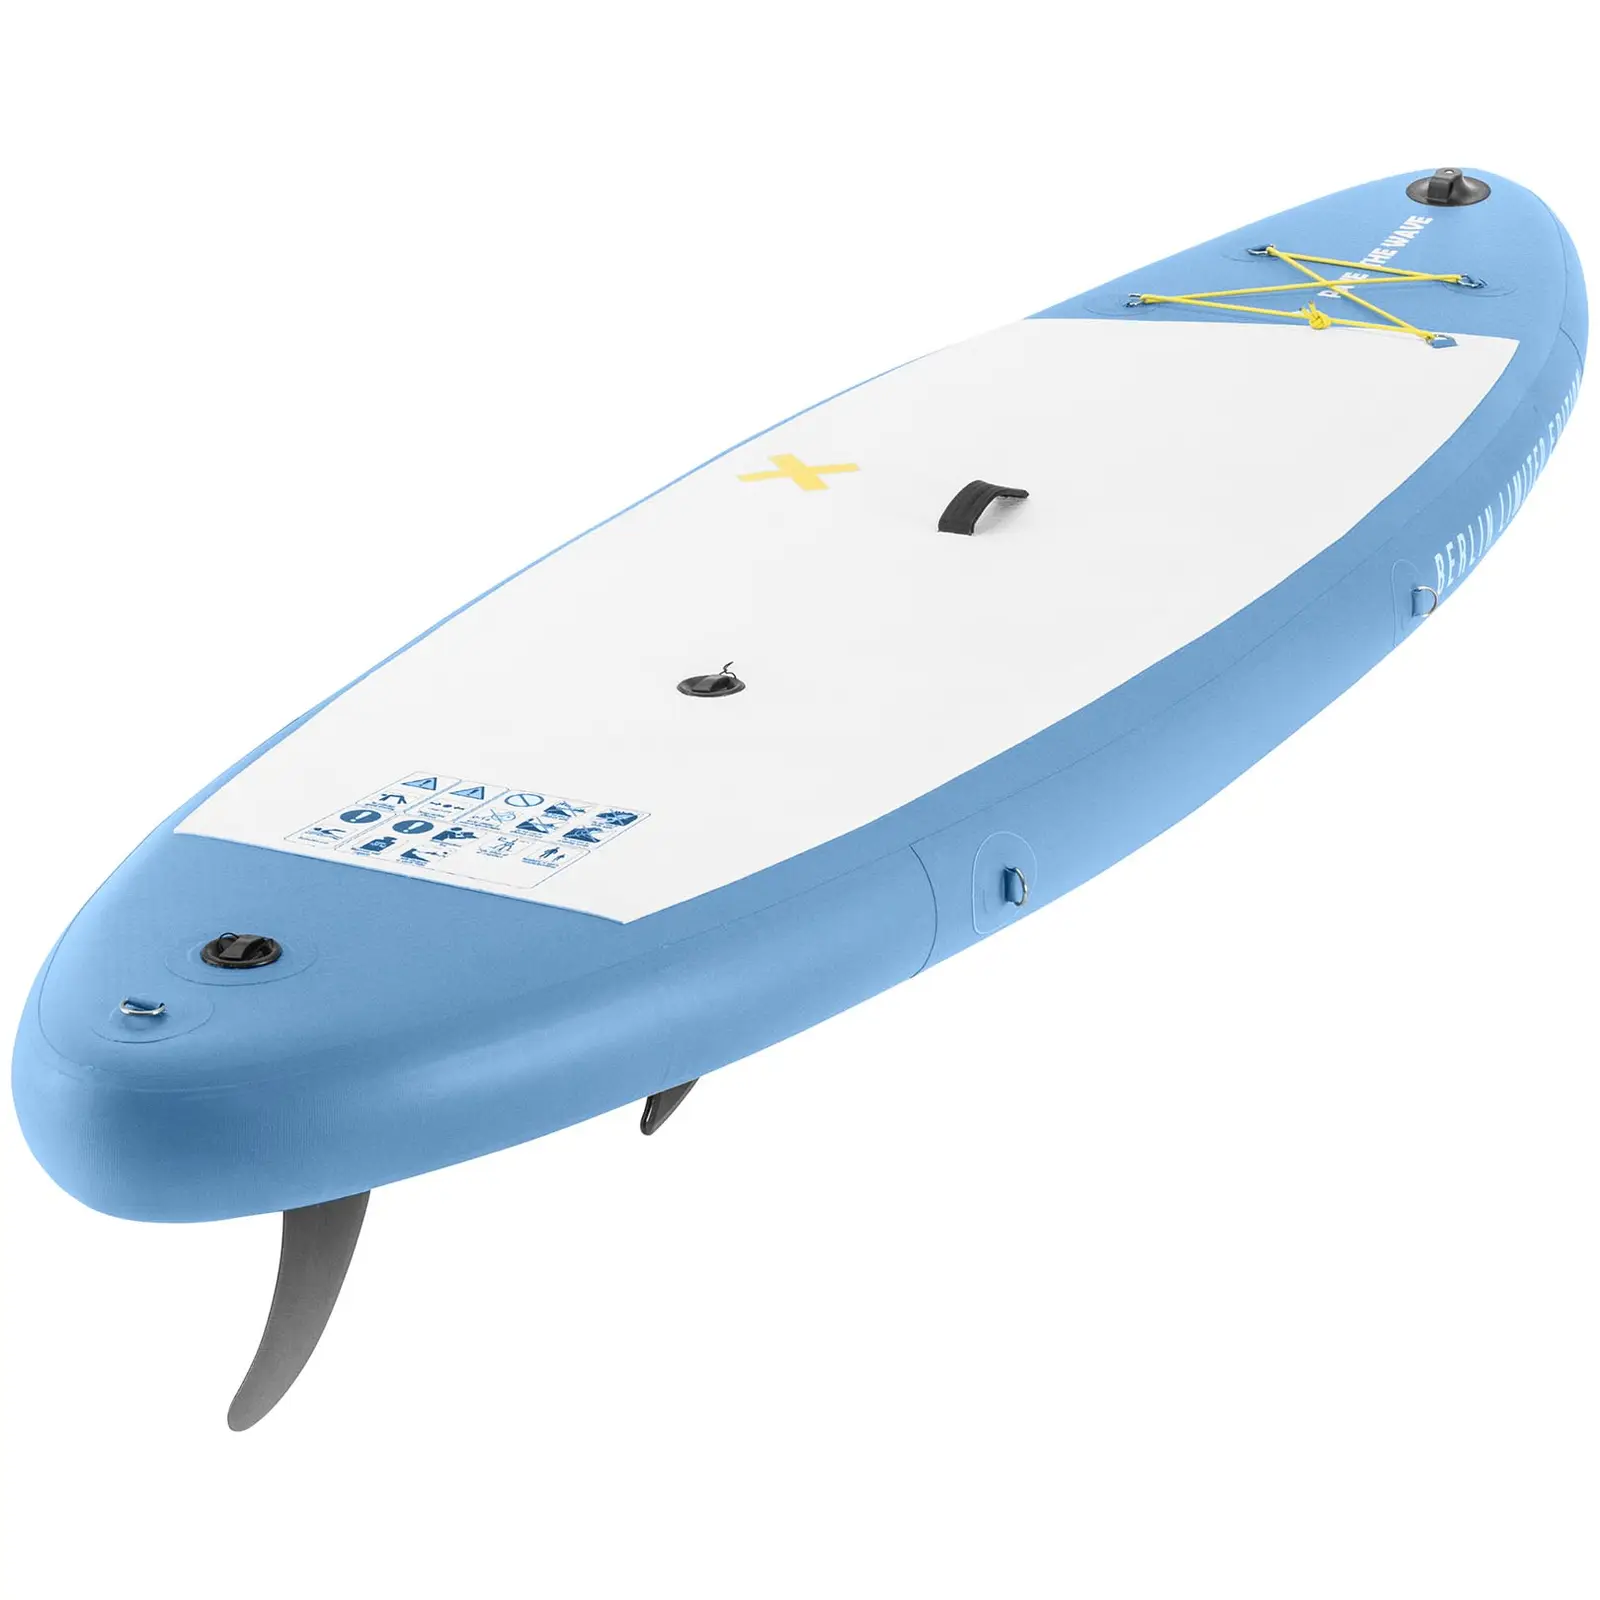 Paddle-board - oppusteligt - 105 kg - lyseblåt - dobbeltkammer - 302 x 81 x 38 cm